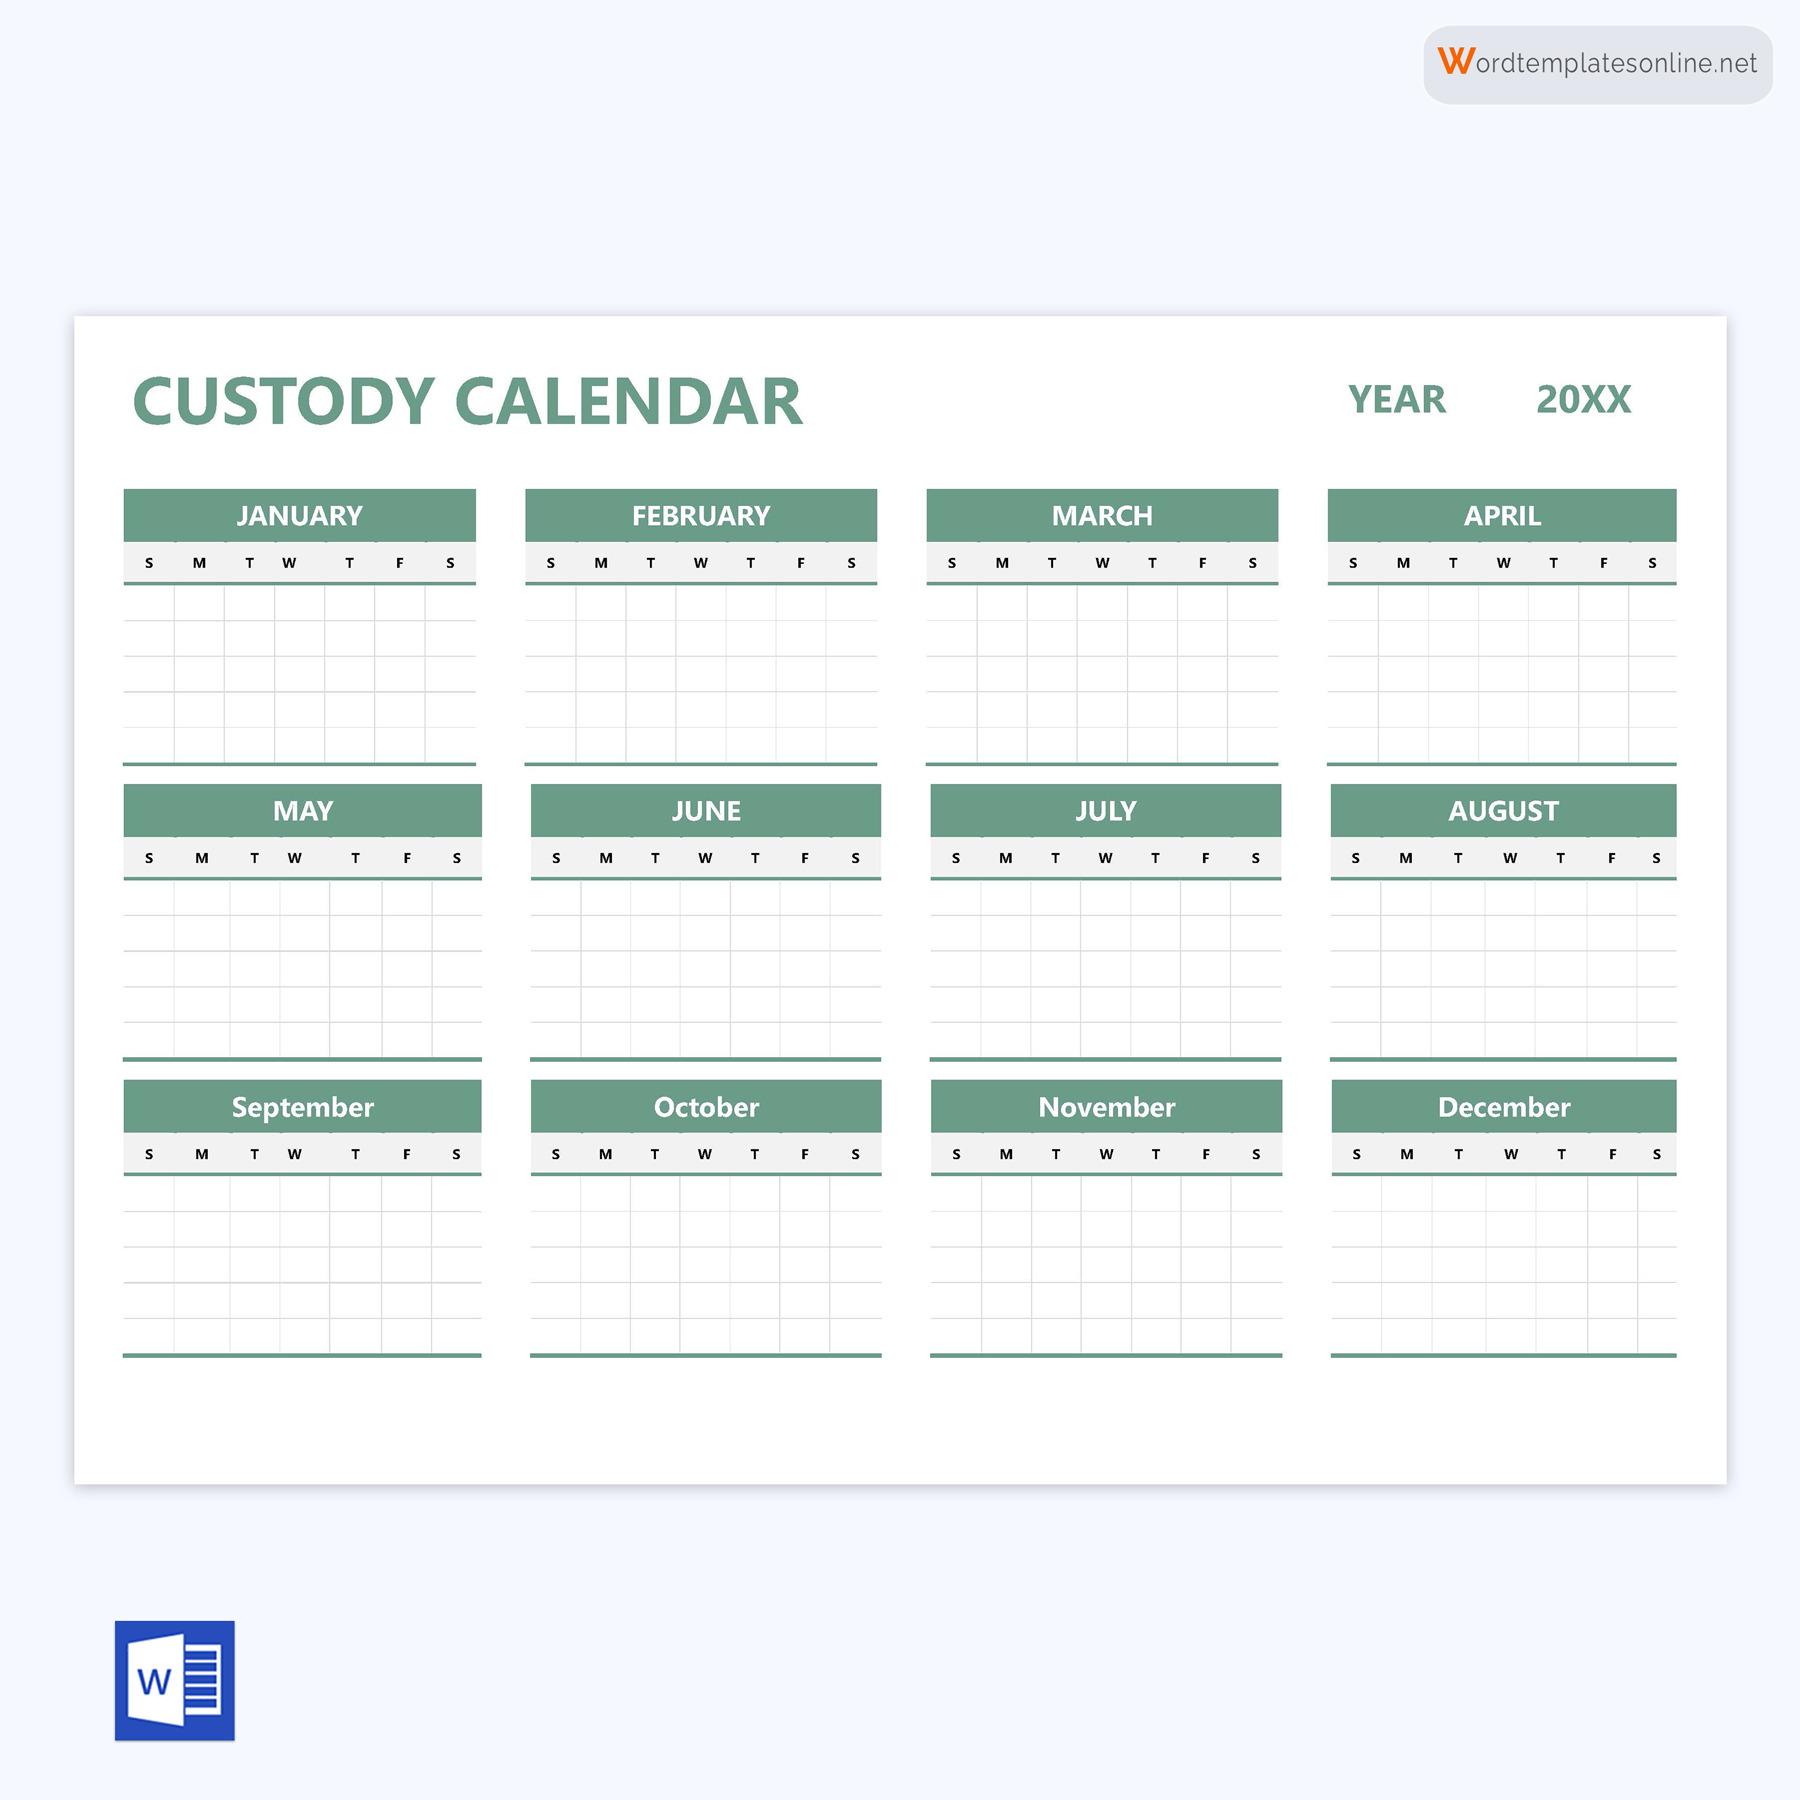 Editable Custody Calendar Template in Word